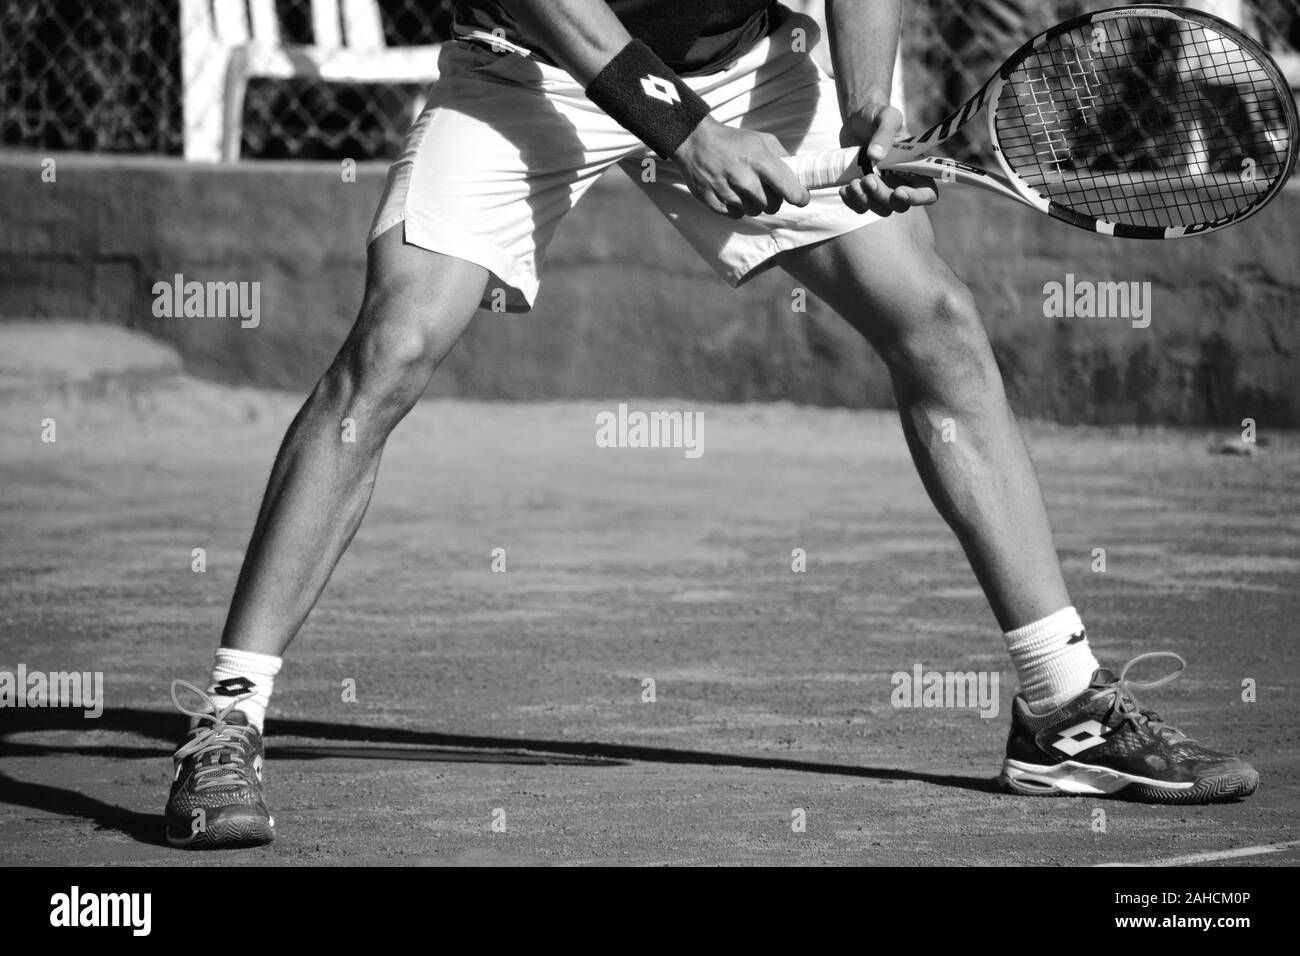 Joueur de tennis inconnu jouant un match de tennis professionnel sur un court d'argile. Banque D'Images